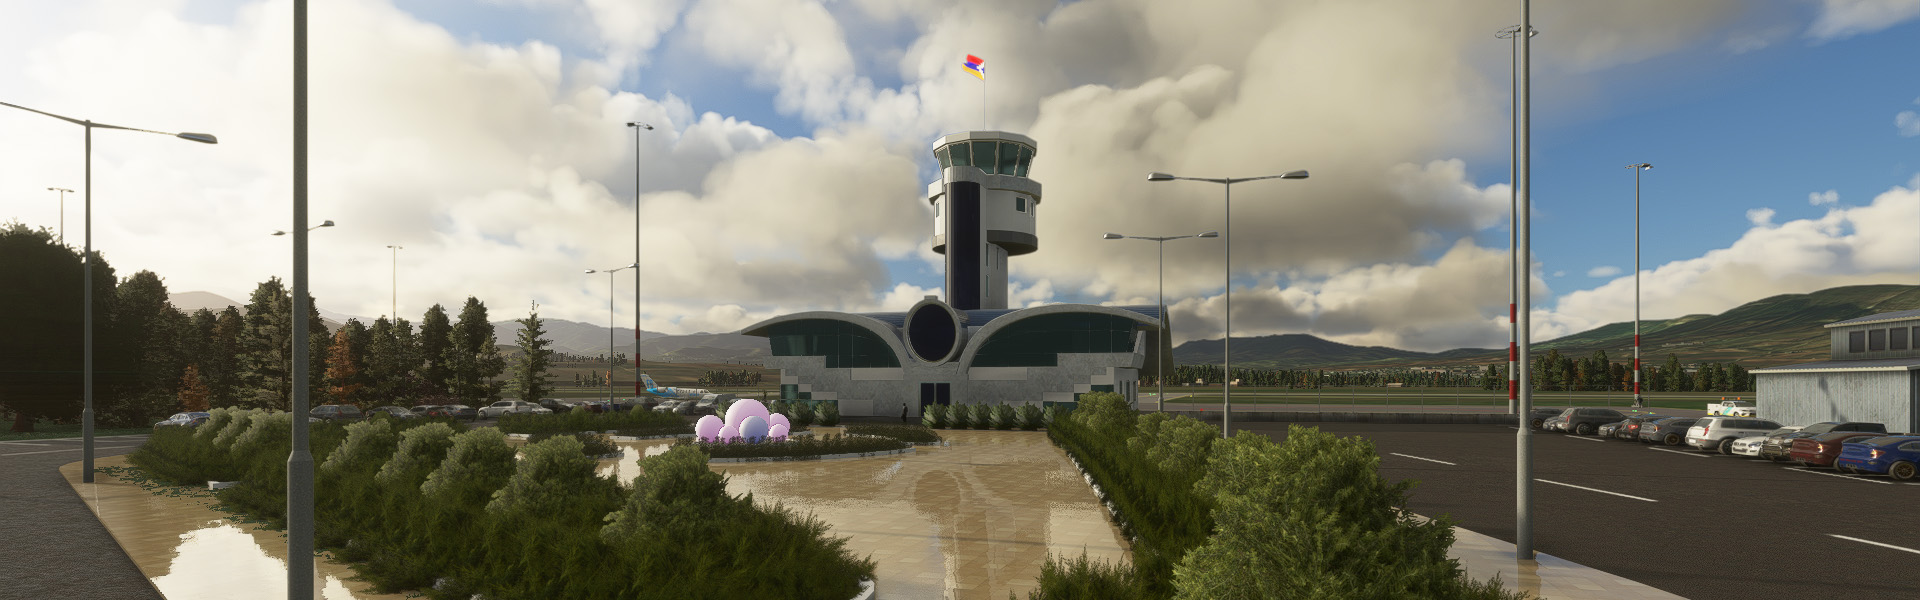 Stepanakert Airport